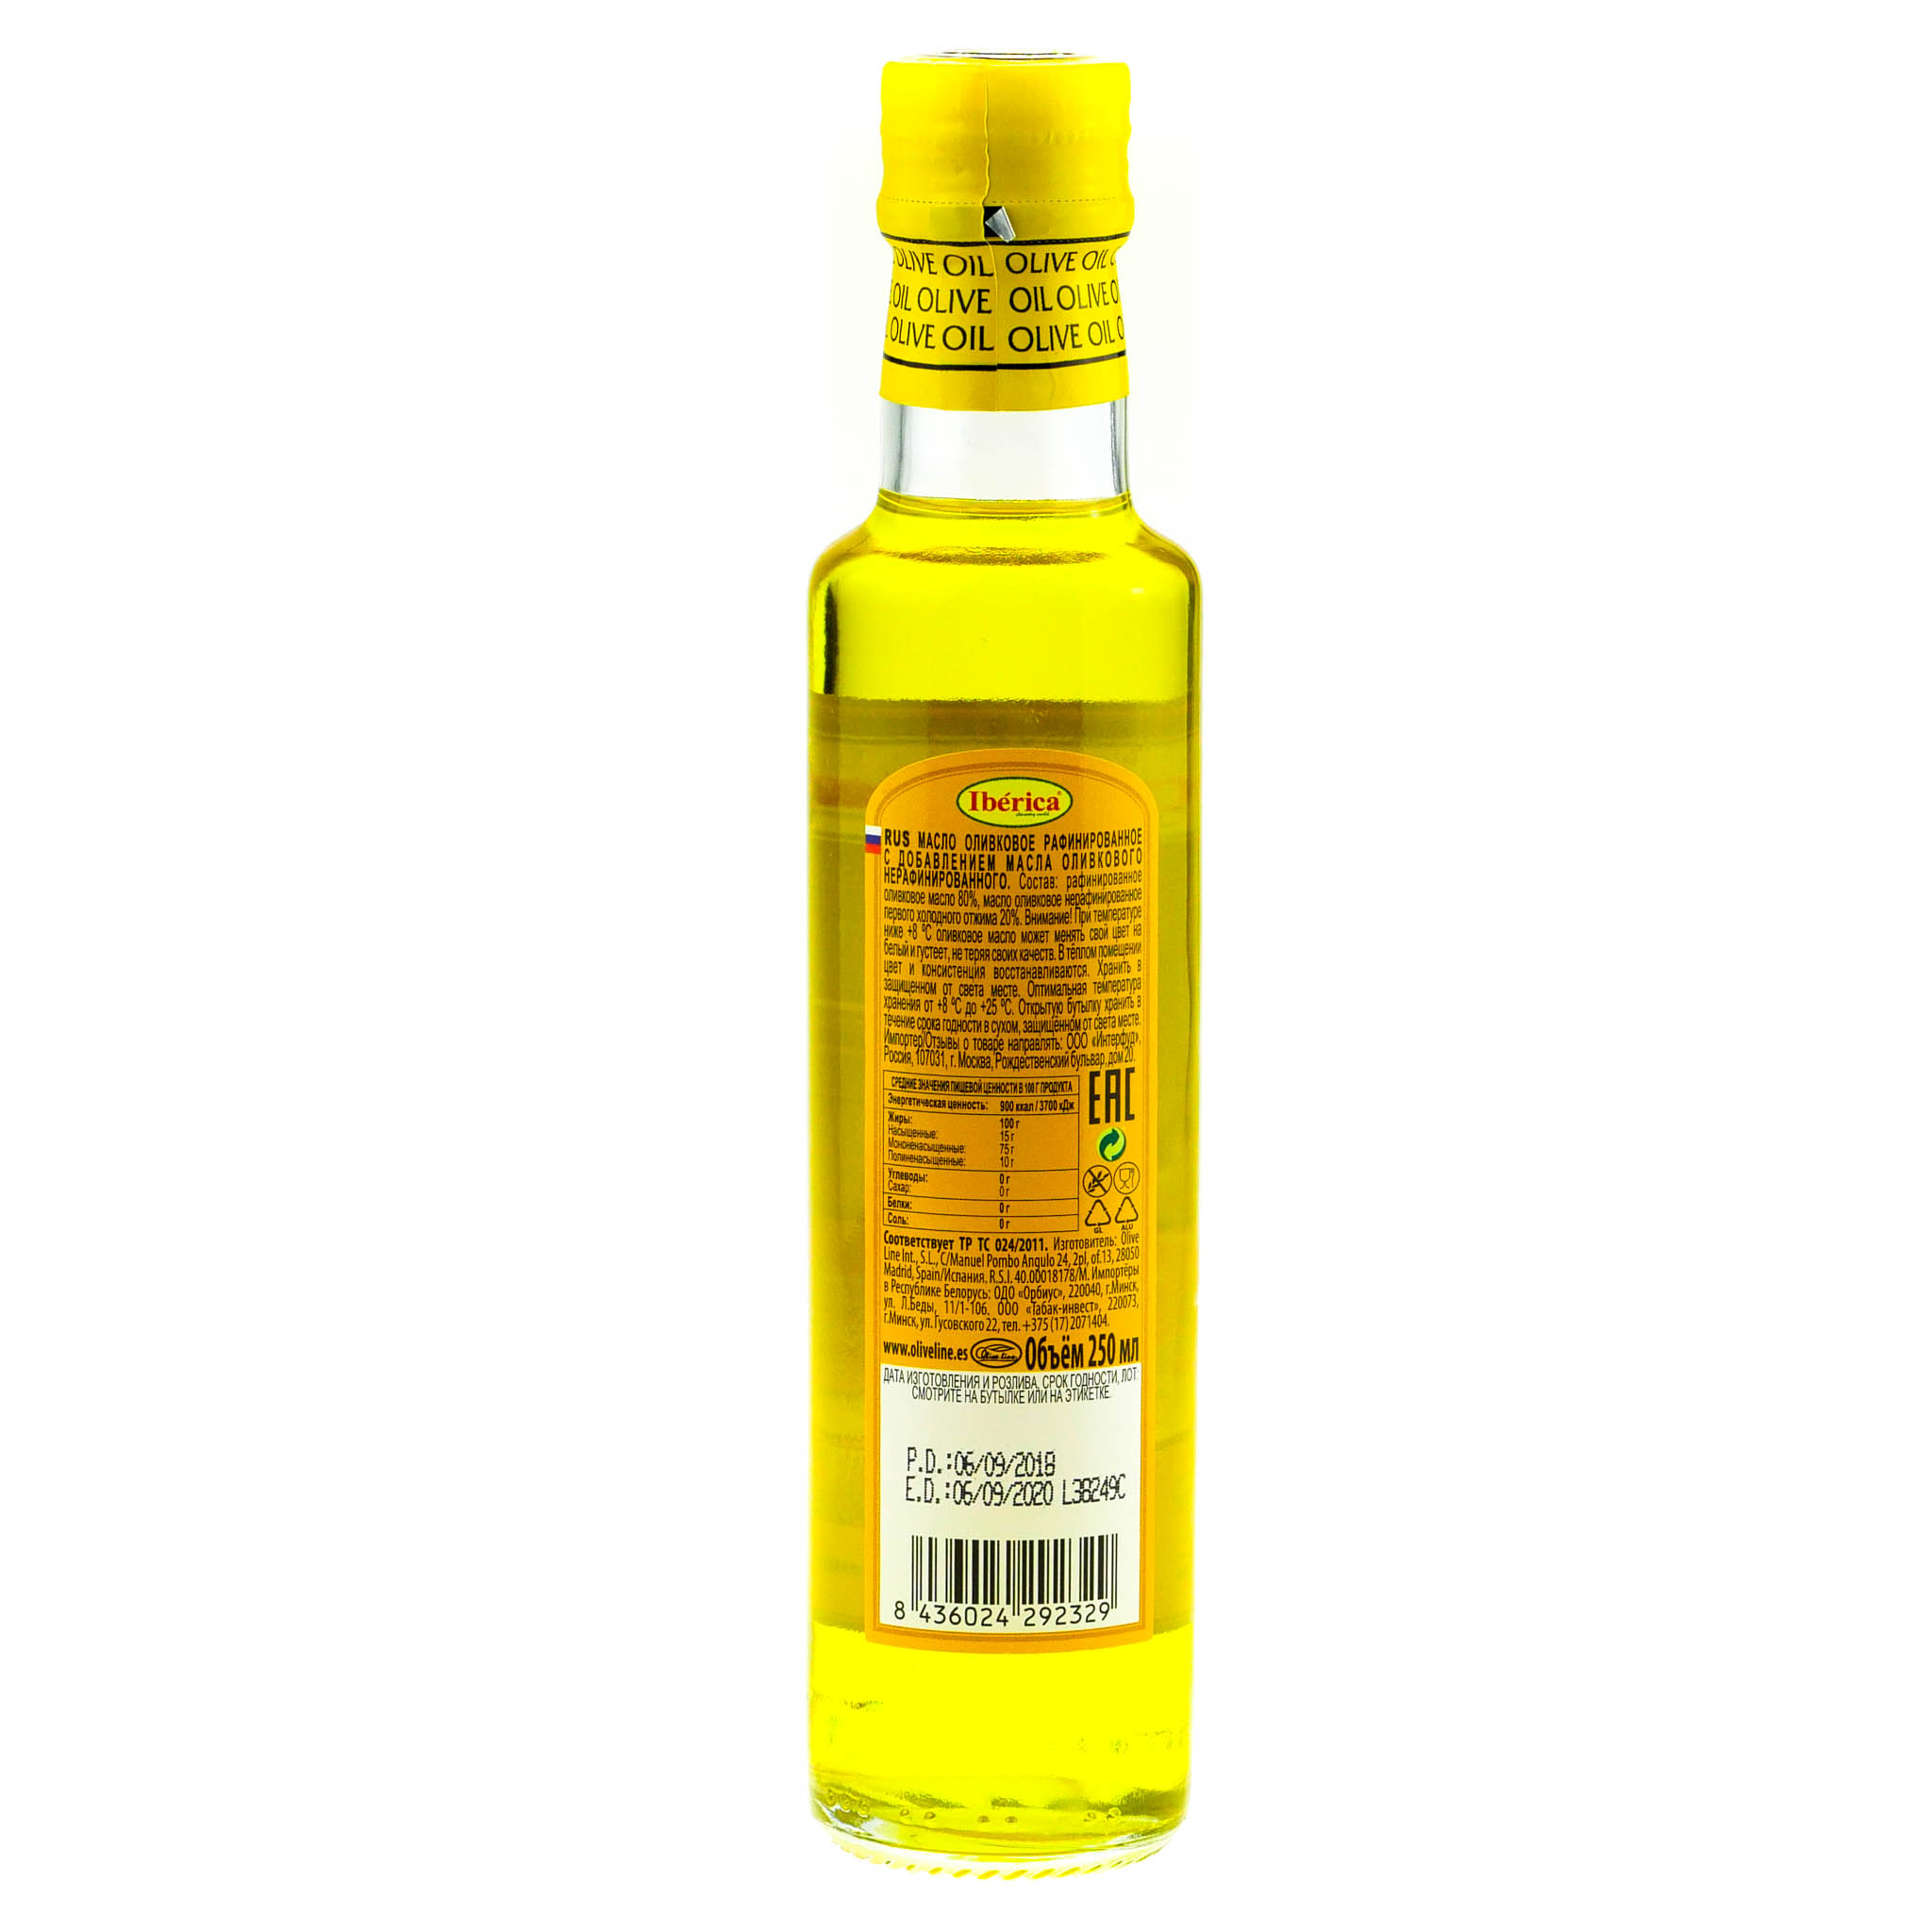 Оливковое масло для салатов нерафинированное. Иберика оливковое масло 250 ml. Масло оливковое Iberica 250 мл. Рафинированное оливковое масло Иберика. Iberica масло оливковое рафинированное.